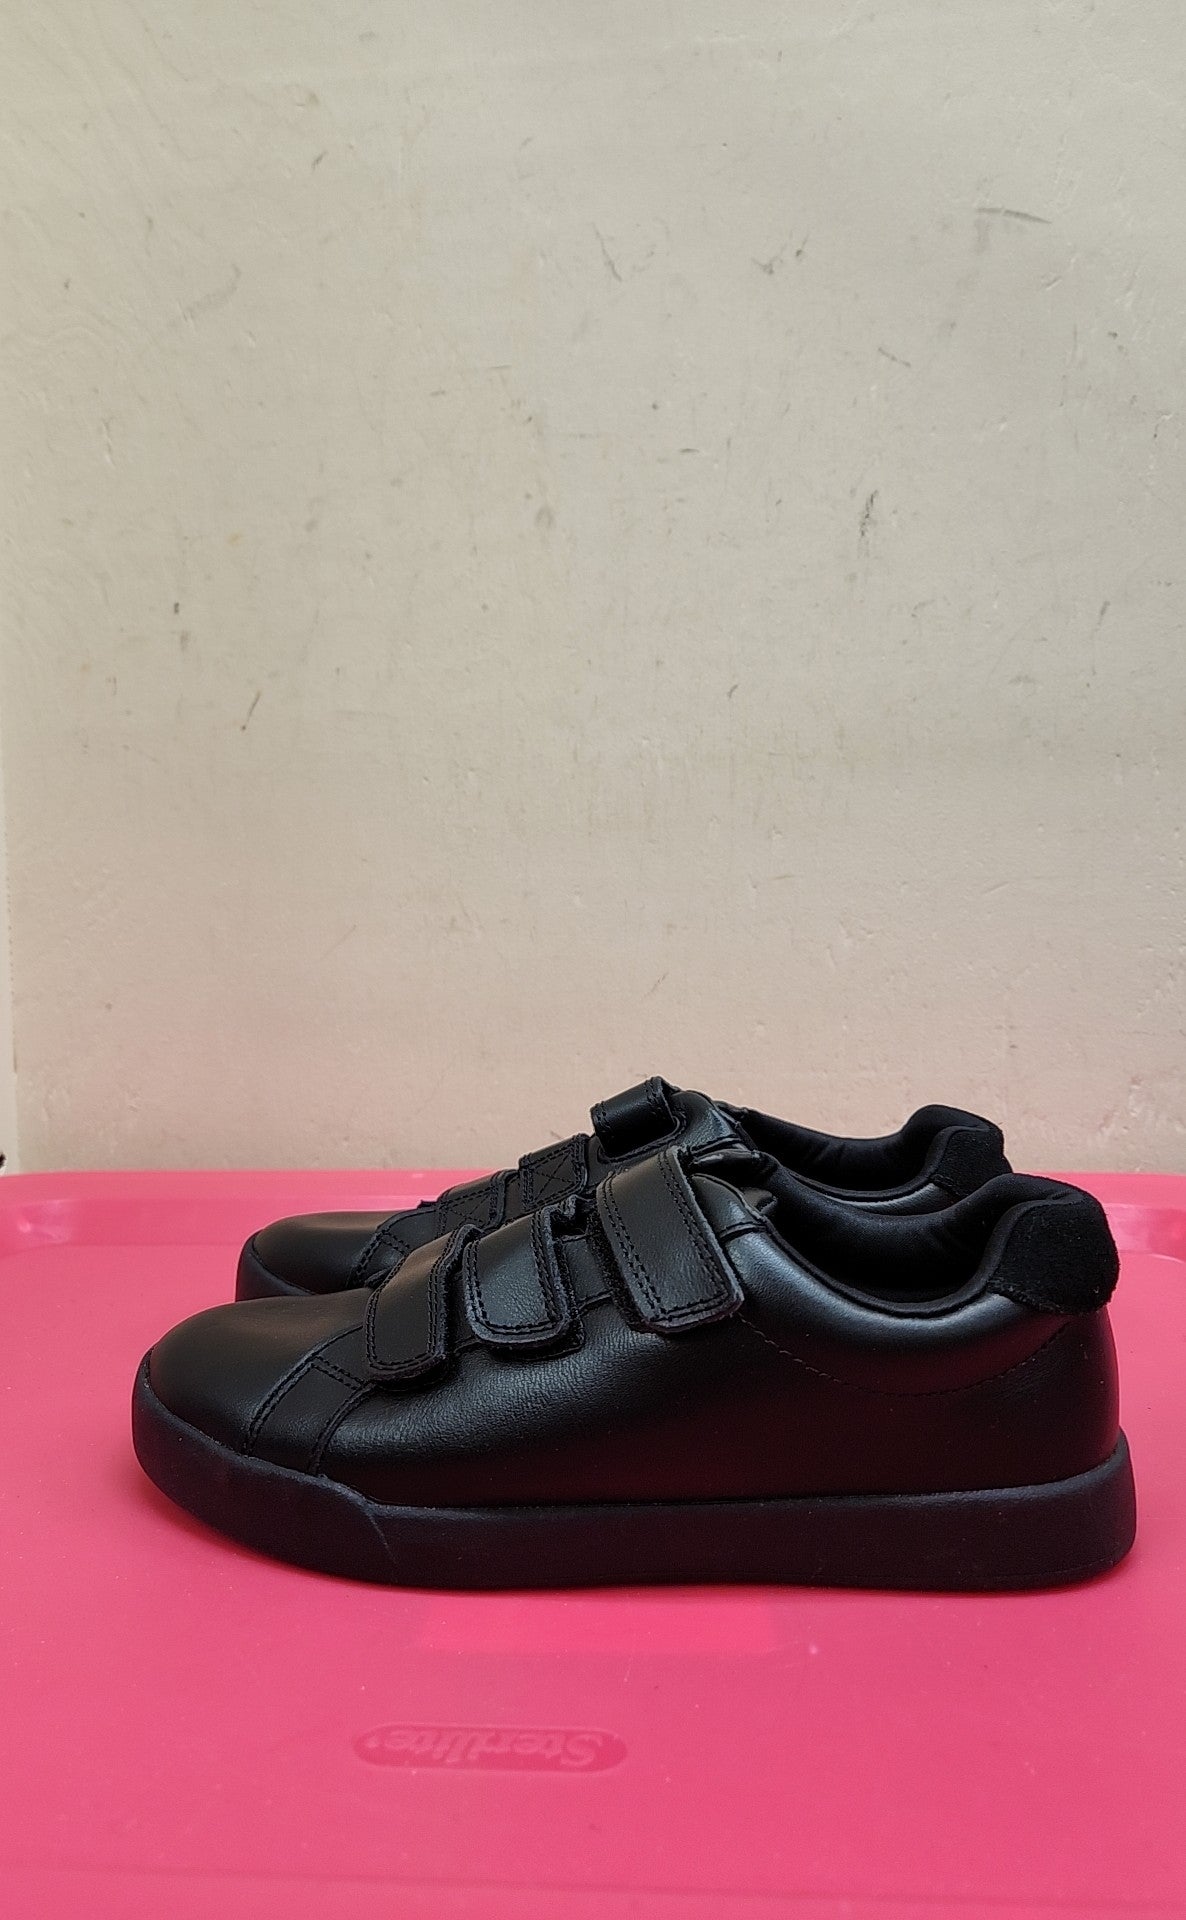 Marks & Spencer Boy's Size 3 Black Shoes